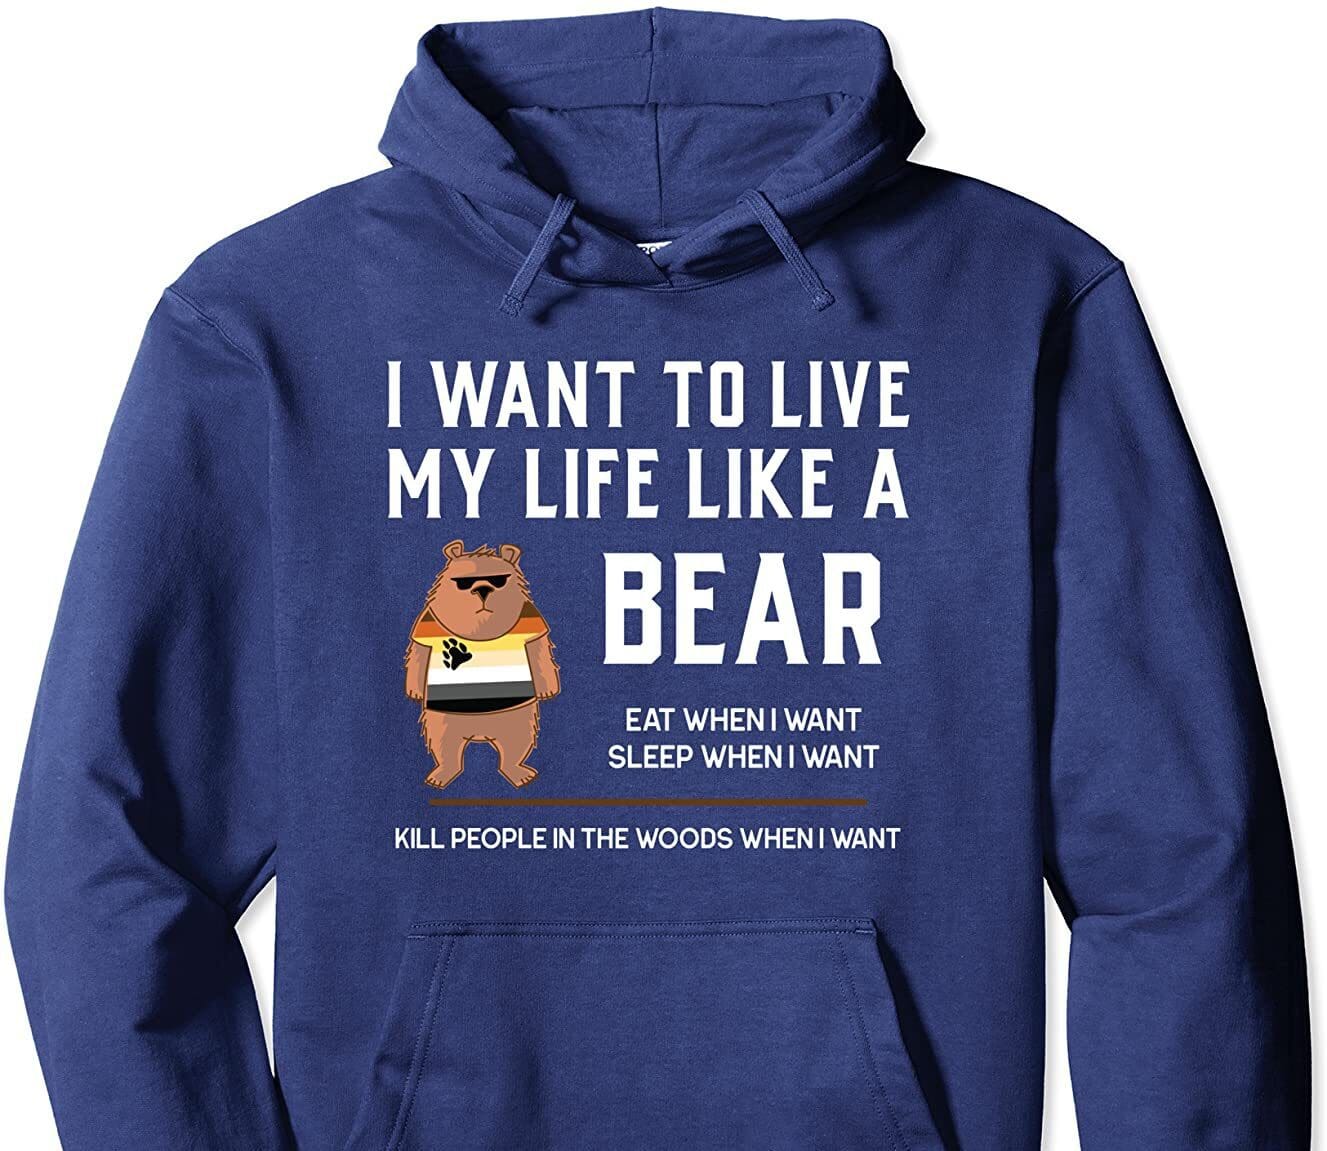 Live like a bear